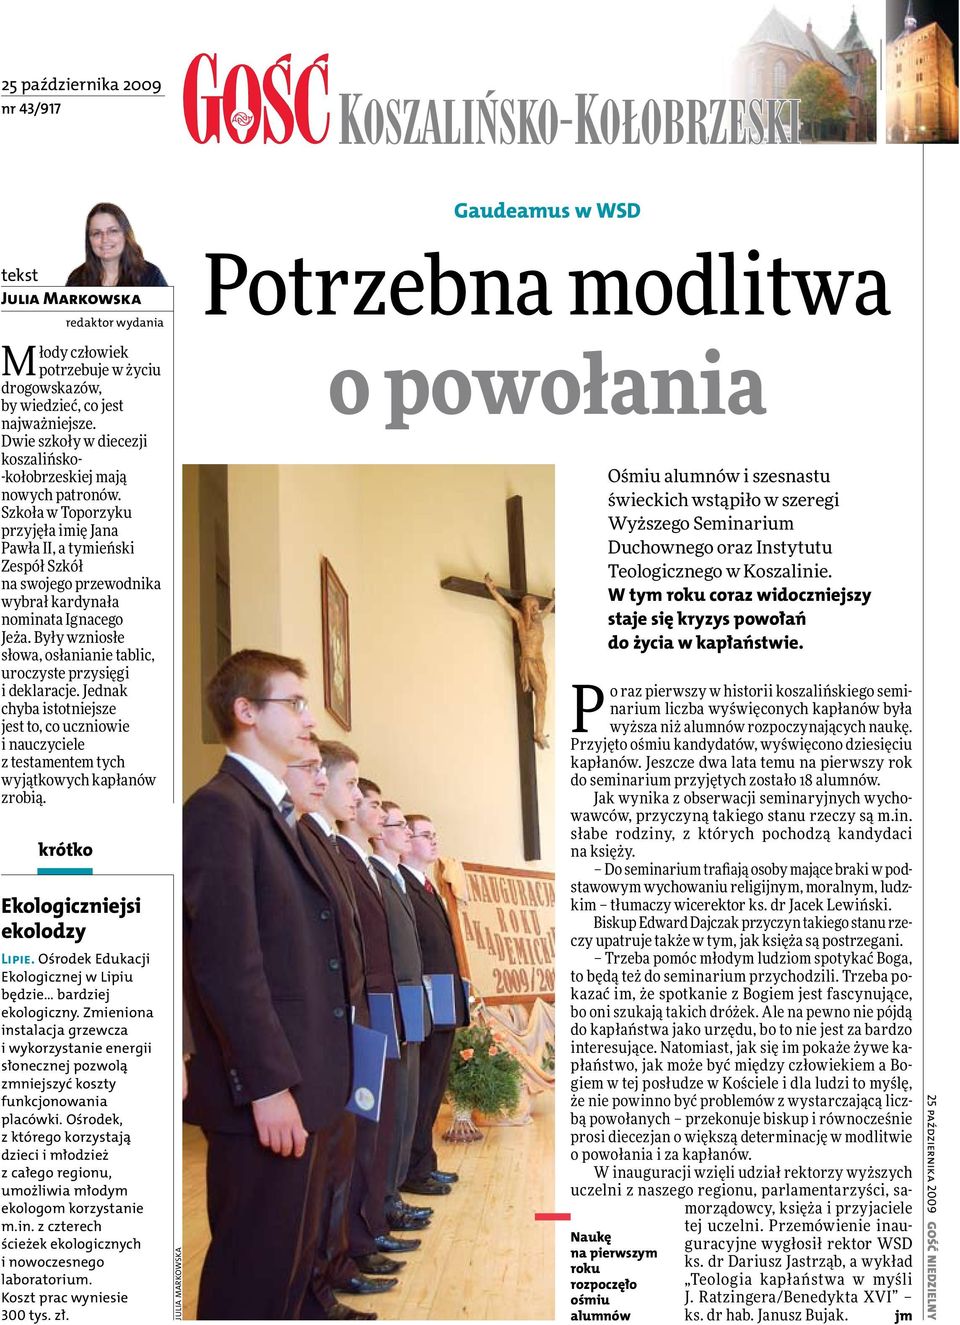 Szkoła w Toporzyku przyjęła imię Jana Pawła II, a tymieński Zespół Szkół na swojego przewodnika wybrał kardynała nominata Ignacego Jeża.